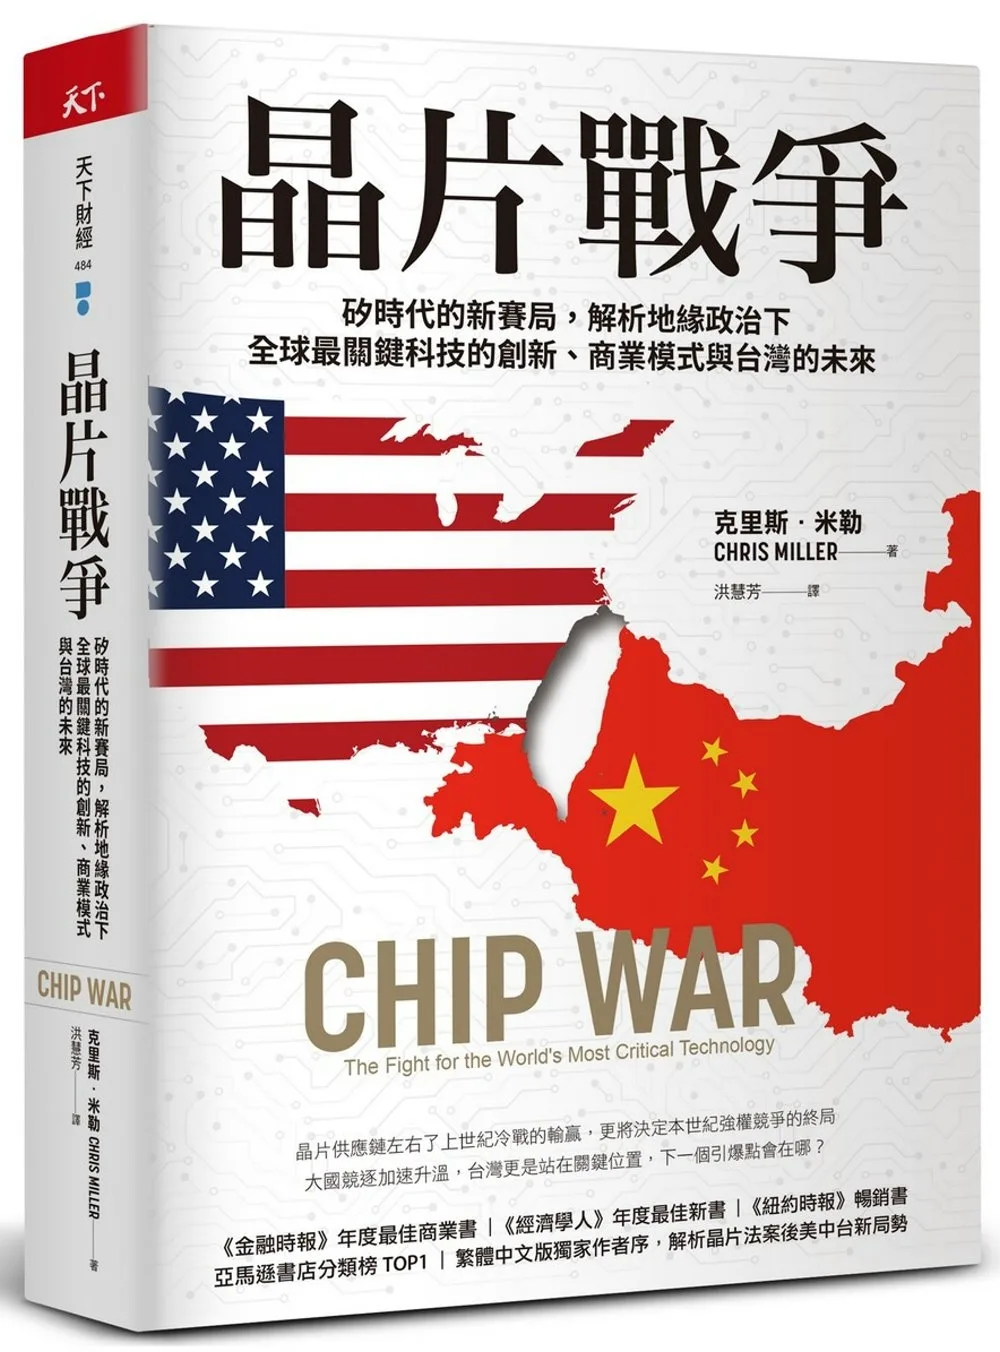 晶片戰爭（獨家書衣款）：矽時代的新賽局，解析地緣政治下全球最關鍵科技的創新、商業模式與台灣的未來